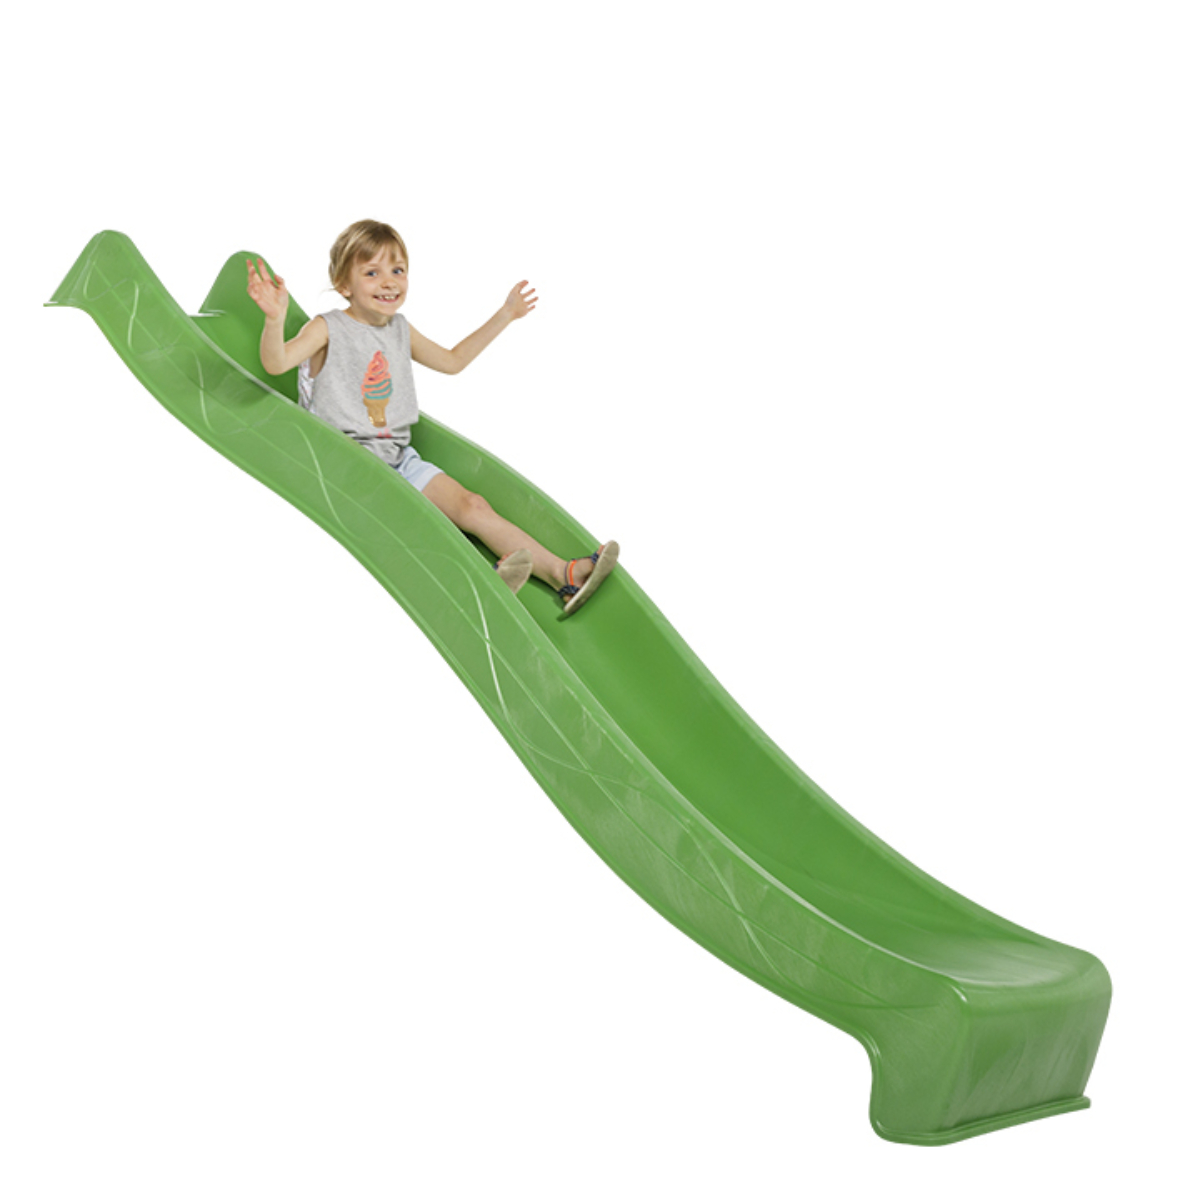 3M Slide Garden Playground najdlhšie